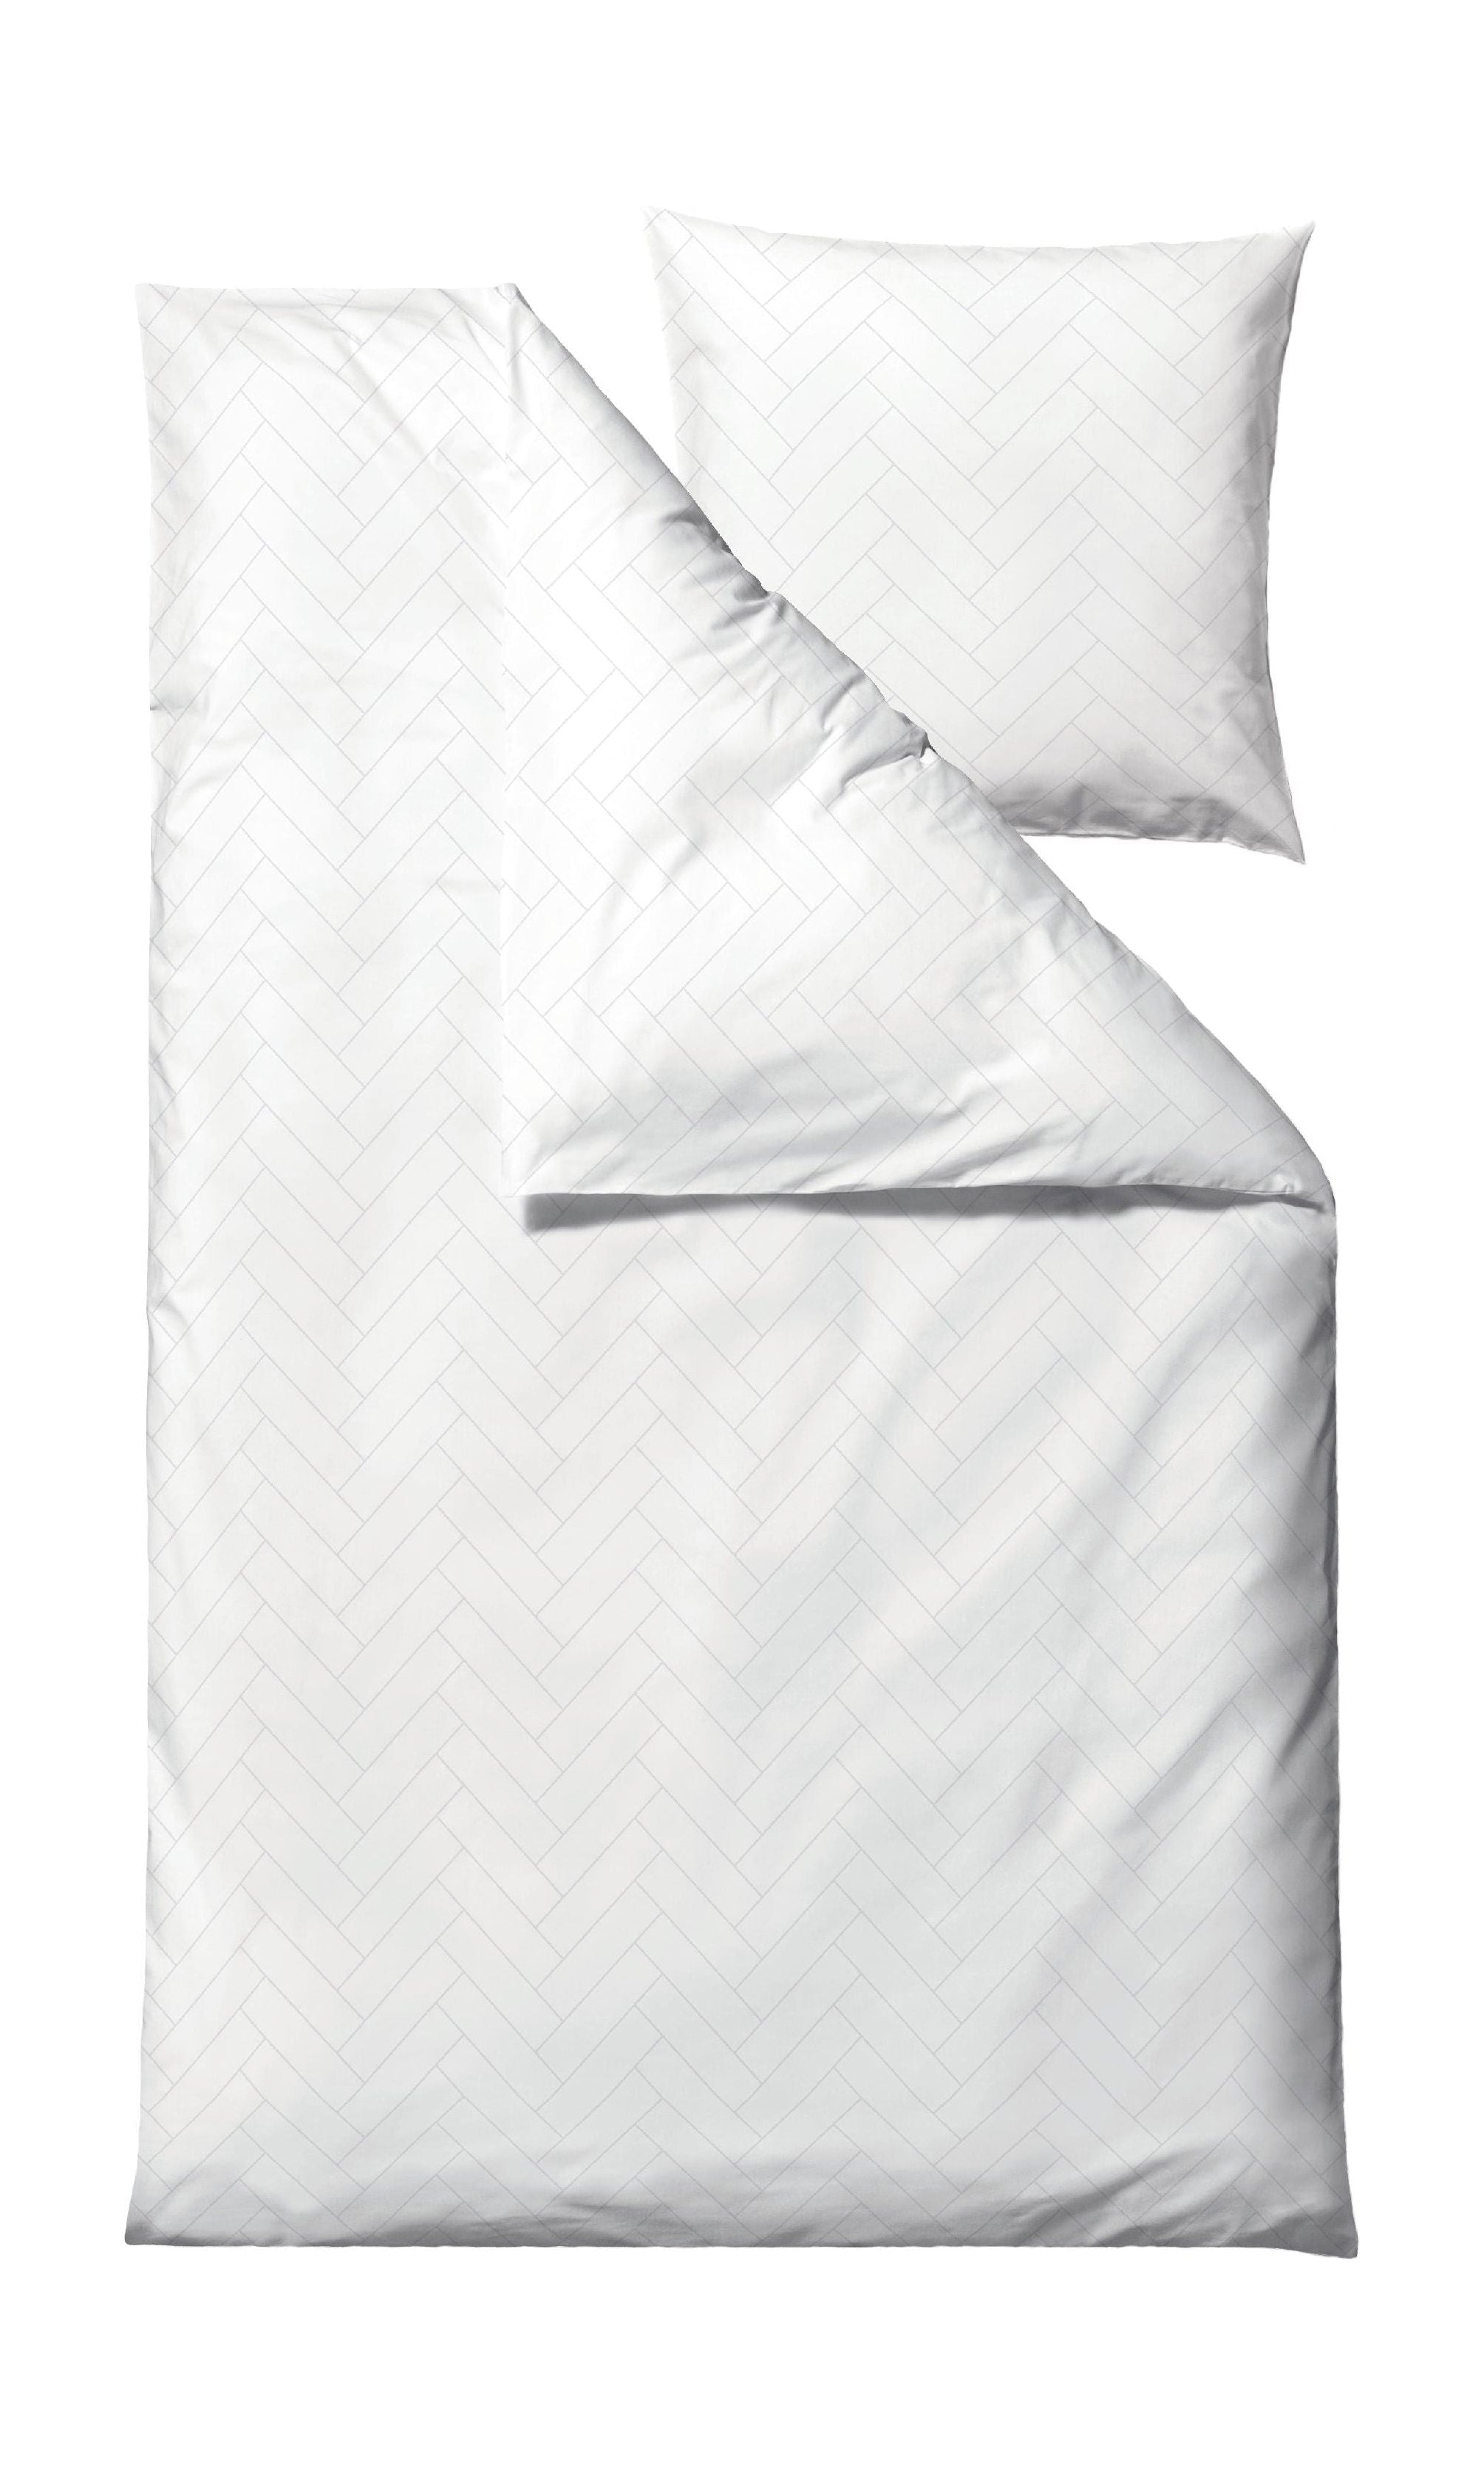 Södahl piastrelle biancheria da letto 140x220 cm, bianco